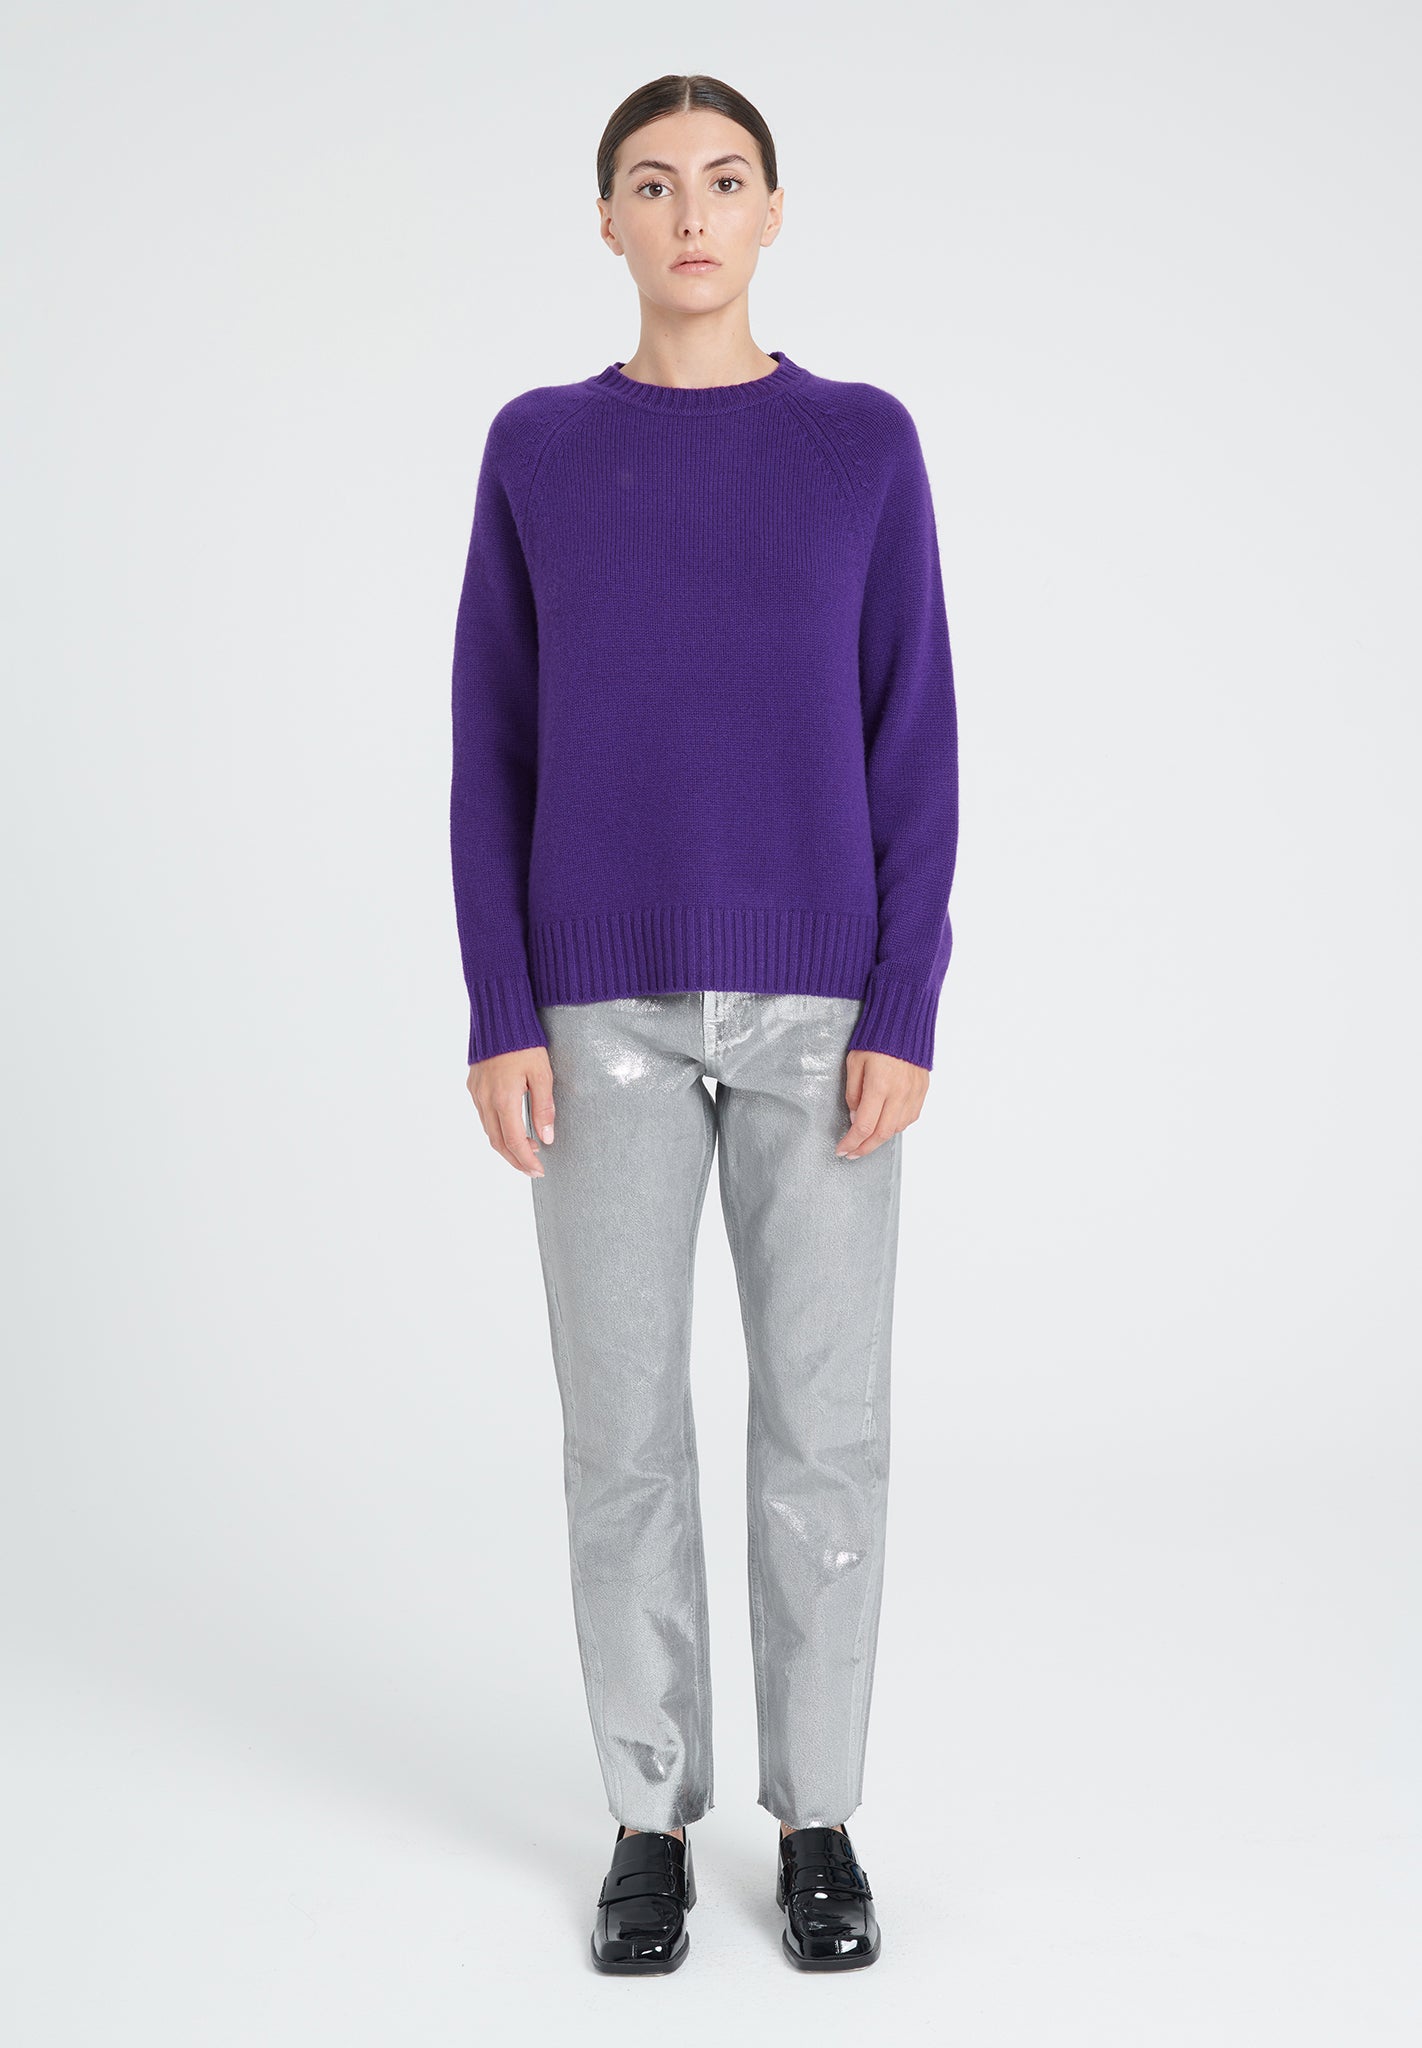 ZAYA 7 Round neck sweater with raglan sleeves in purple 6-thread cashmere